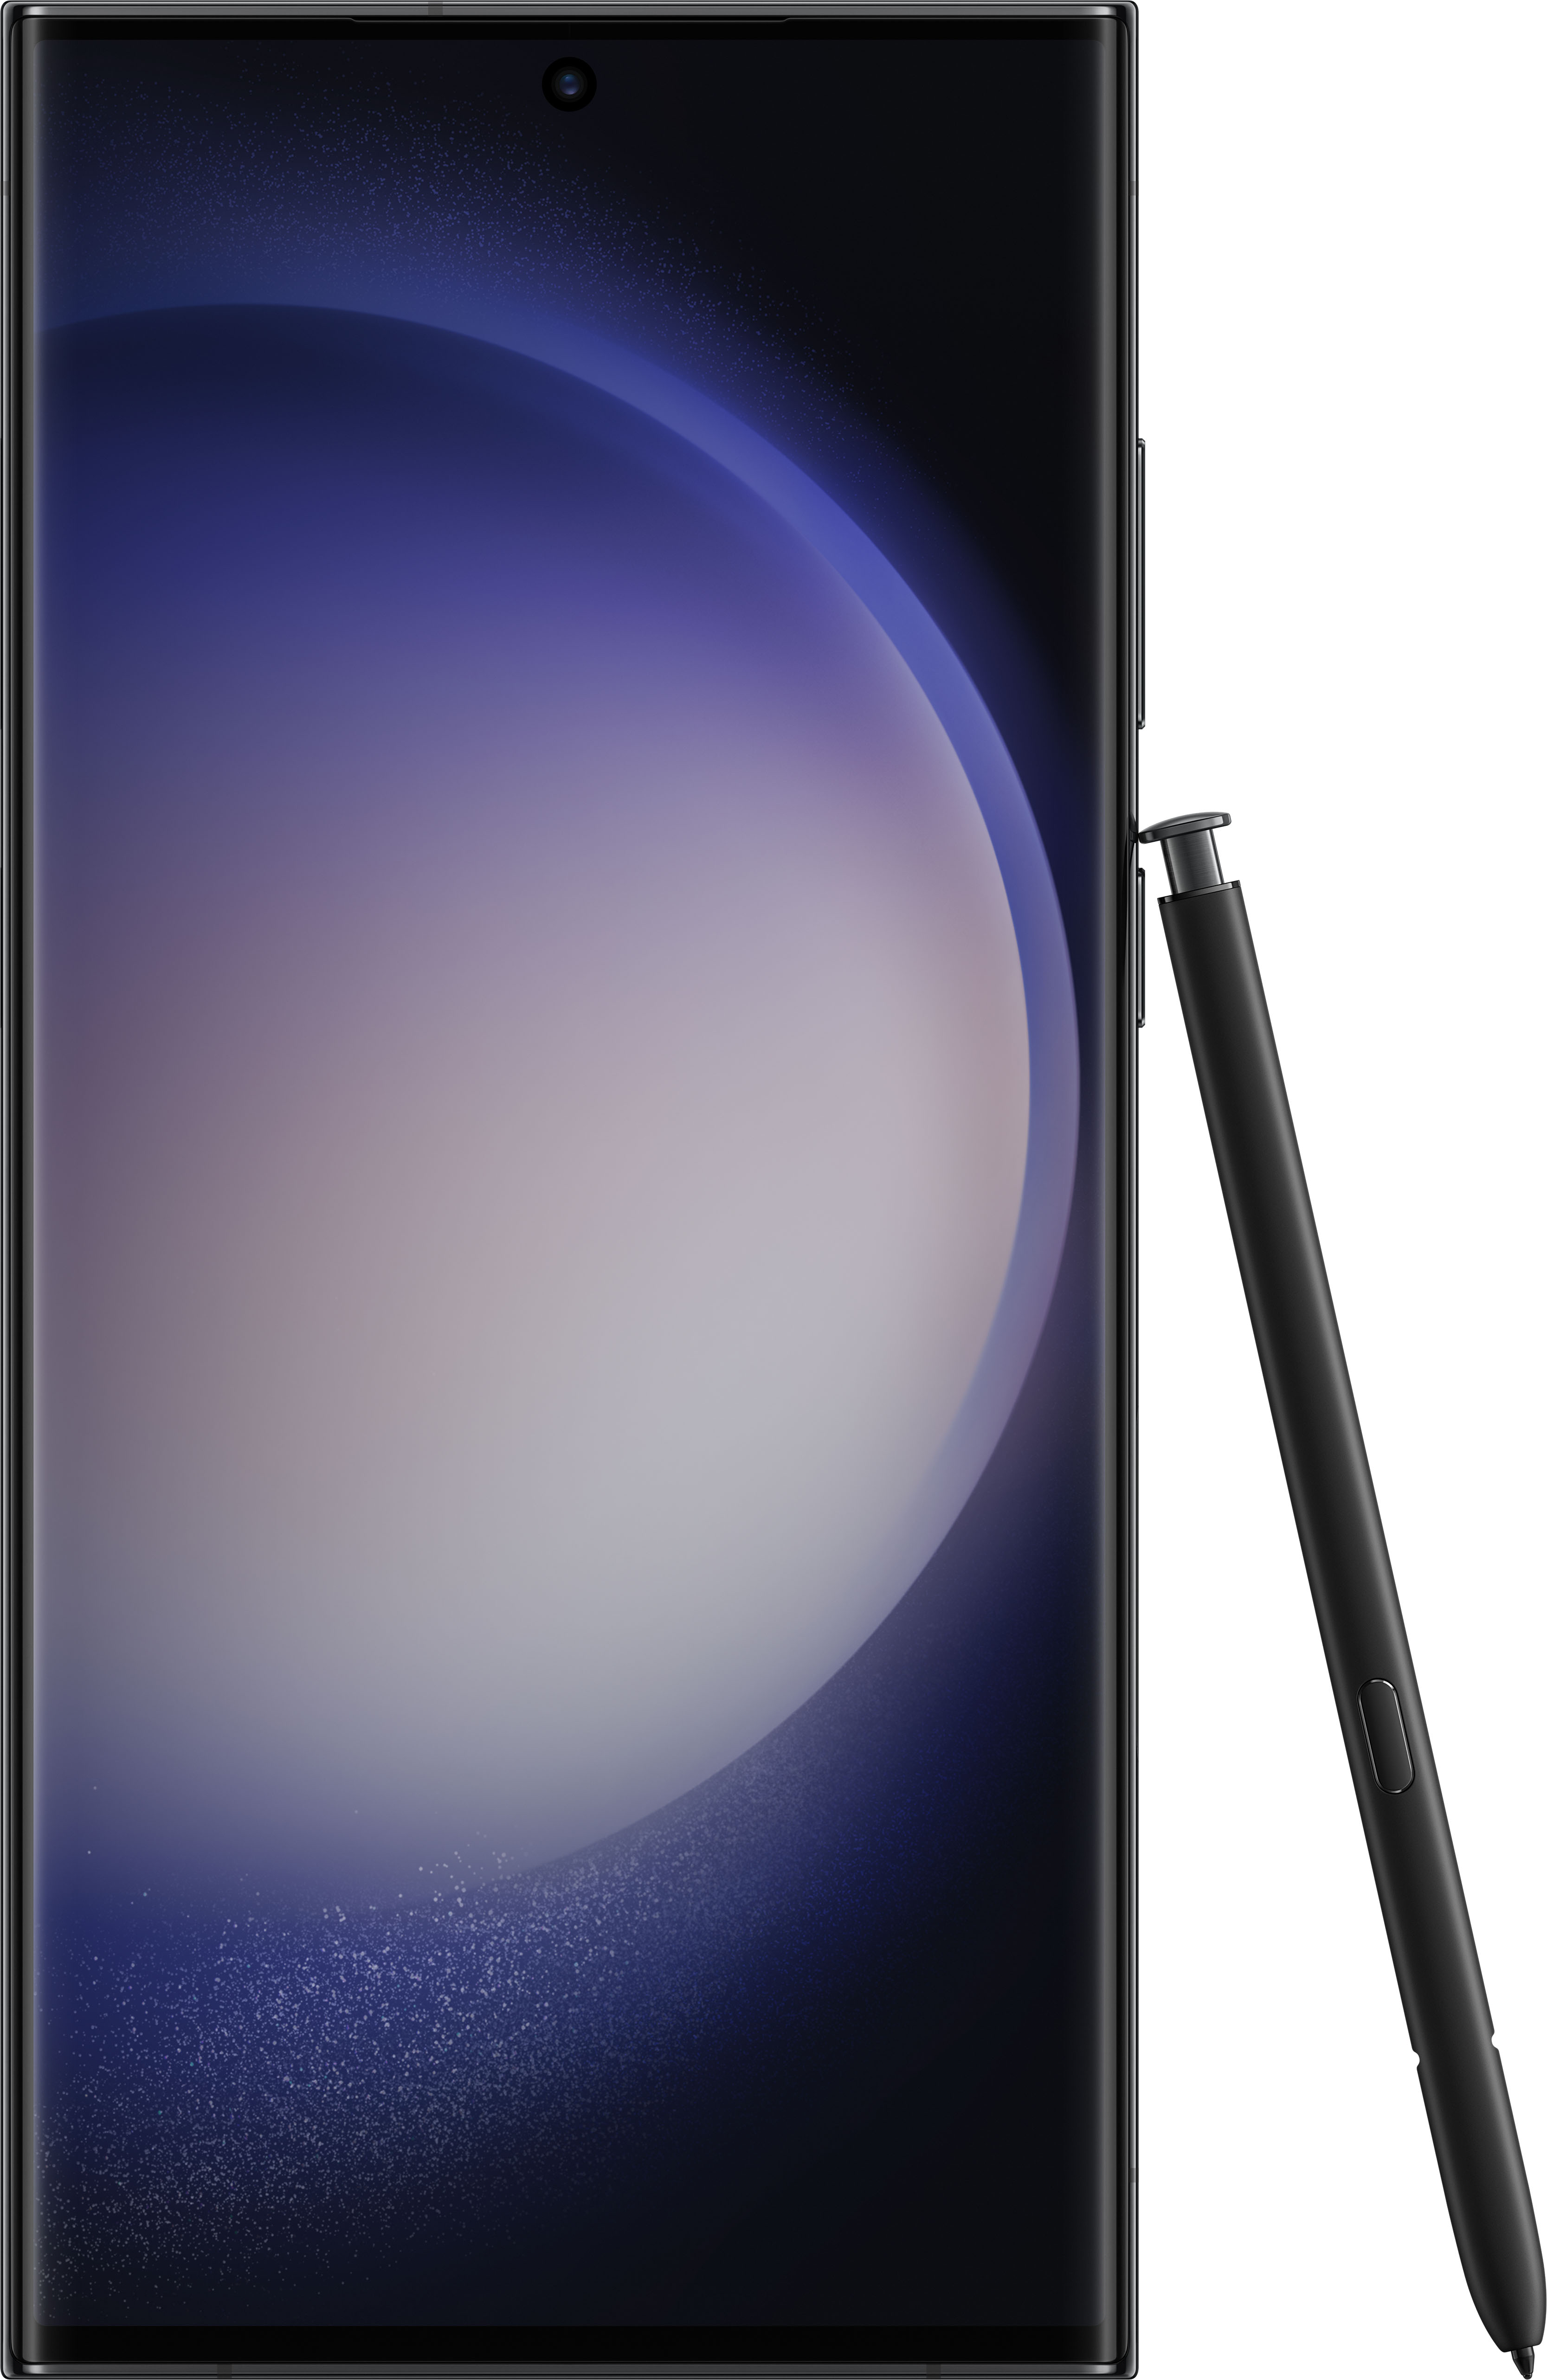 Samsung Galaxy S23 Ultra नेपालीमा: Watch Before you Buy! 